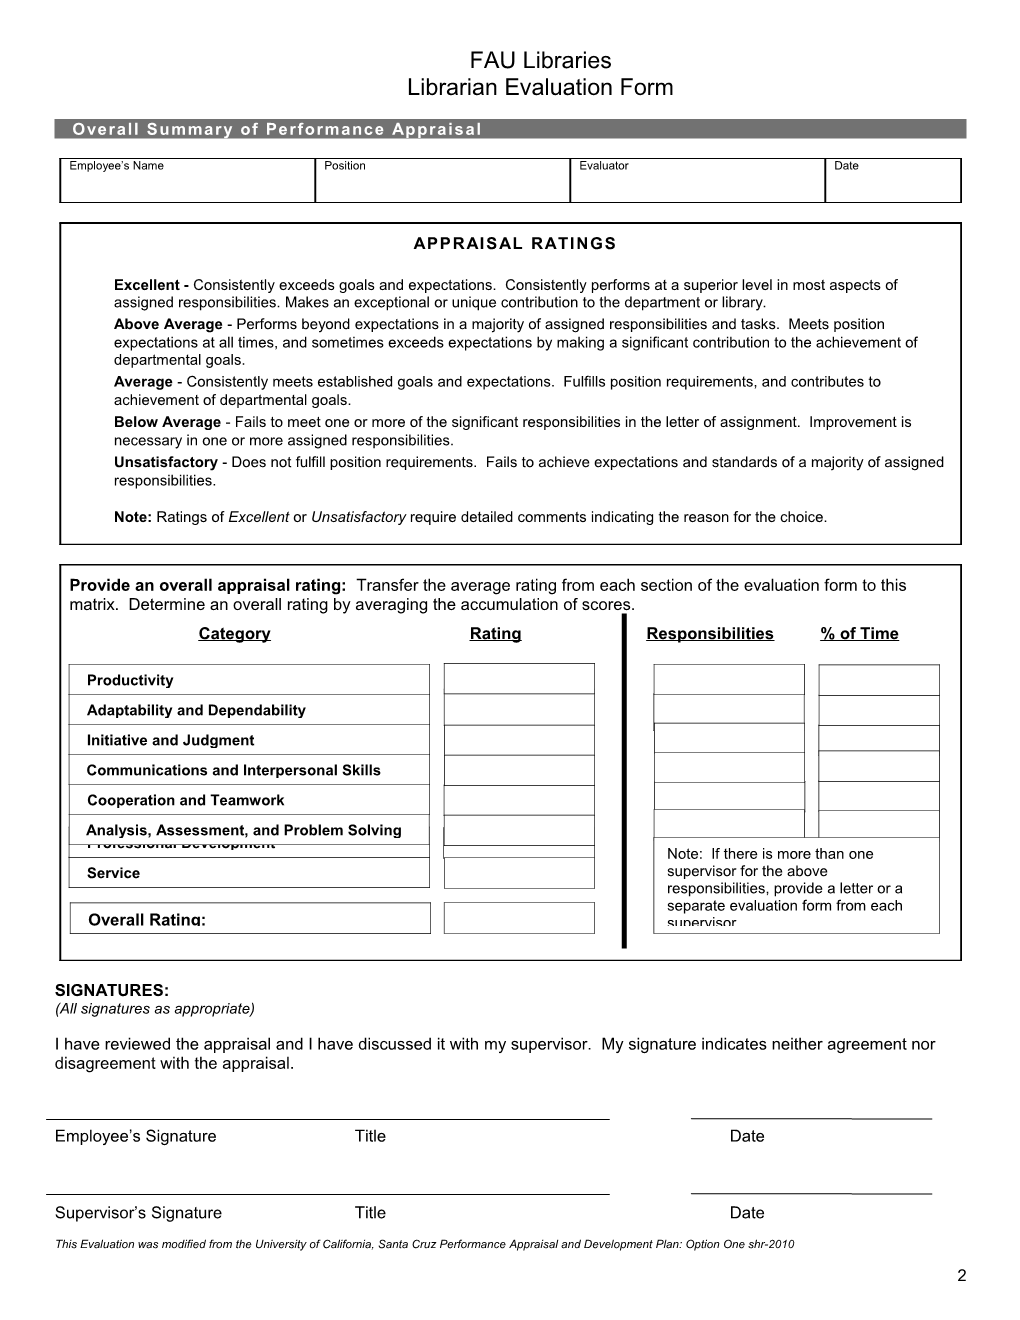 FAU Professional Personnel Evaluation Form